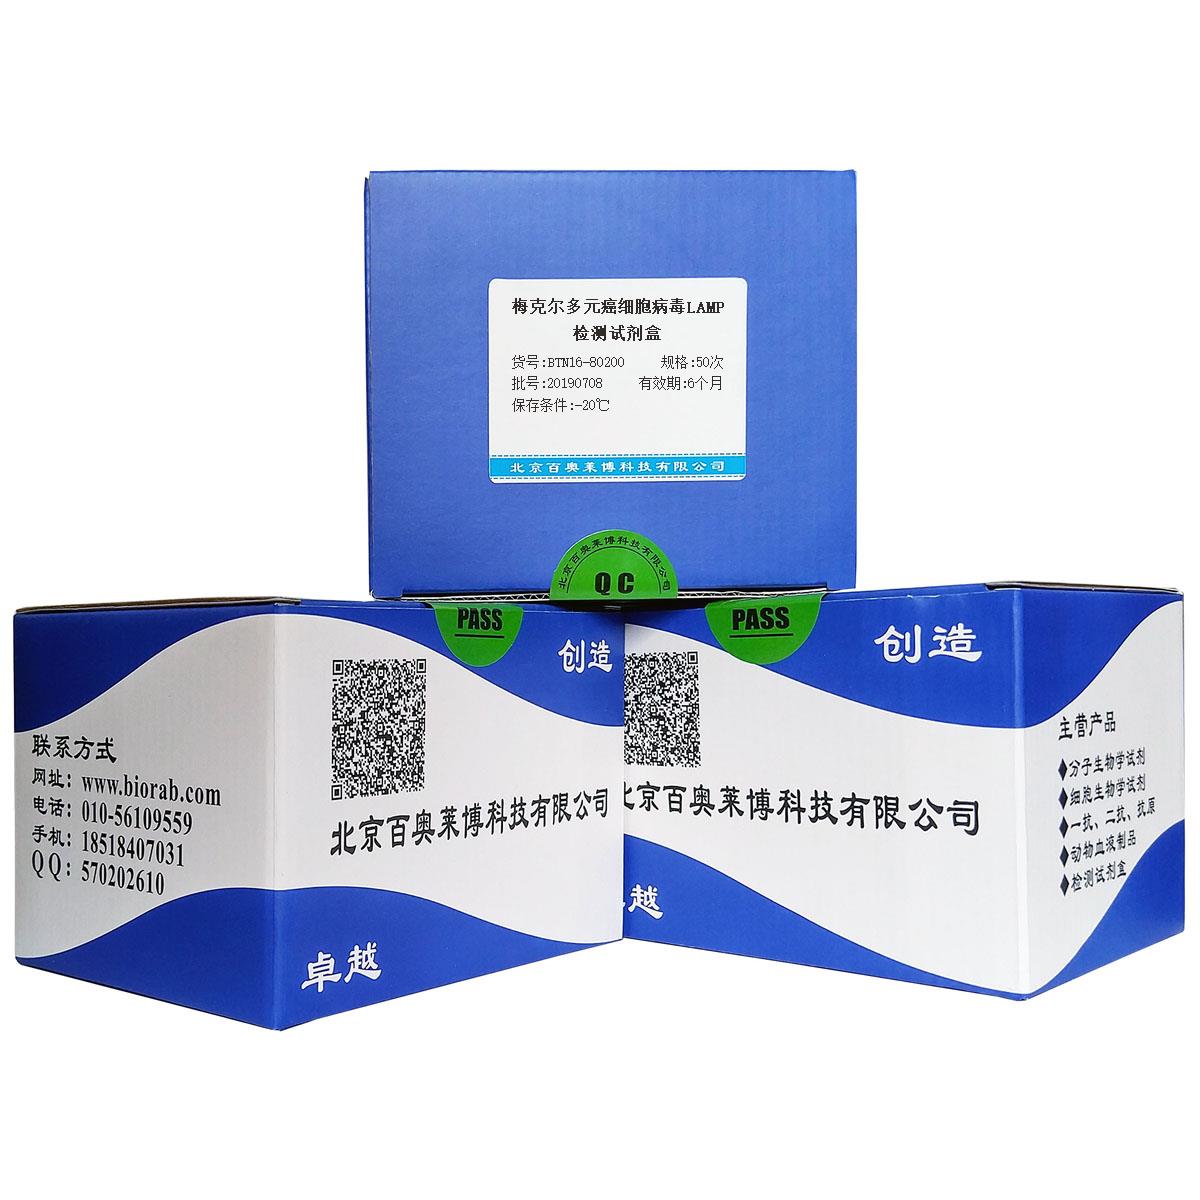 梅克尔多元癌细胞病毒LAMP检测试剂盒北京供应商